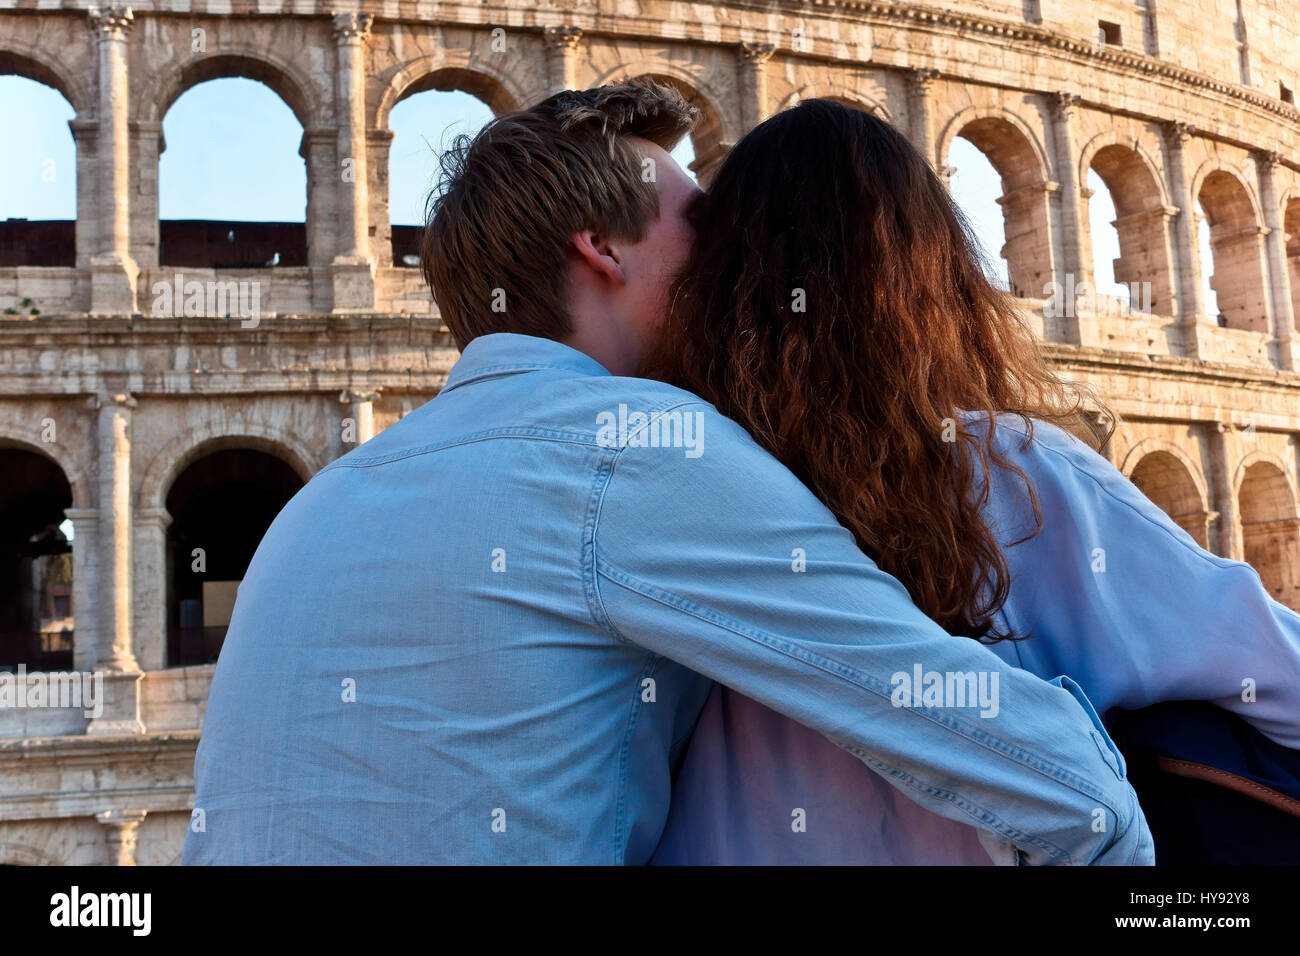 Romantische junge Paar annehmen, um den Arm, im Kolosseum Rom suchen. Colosseo. Ansicht von hinten, von der Rückseite gesehen. Valentines Tag. Toutists. Italien Stockfoto